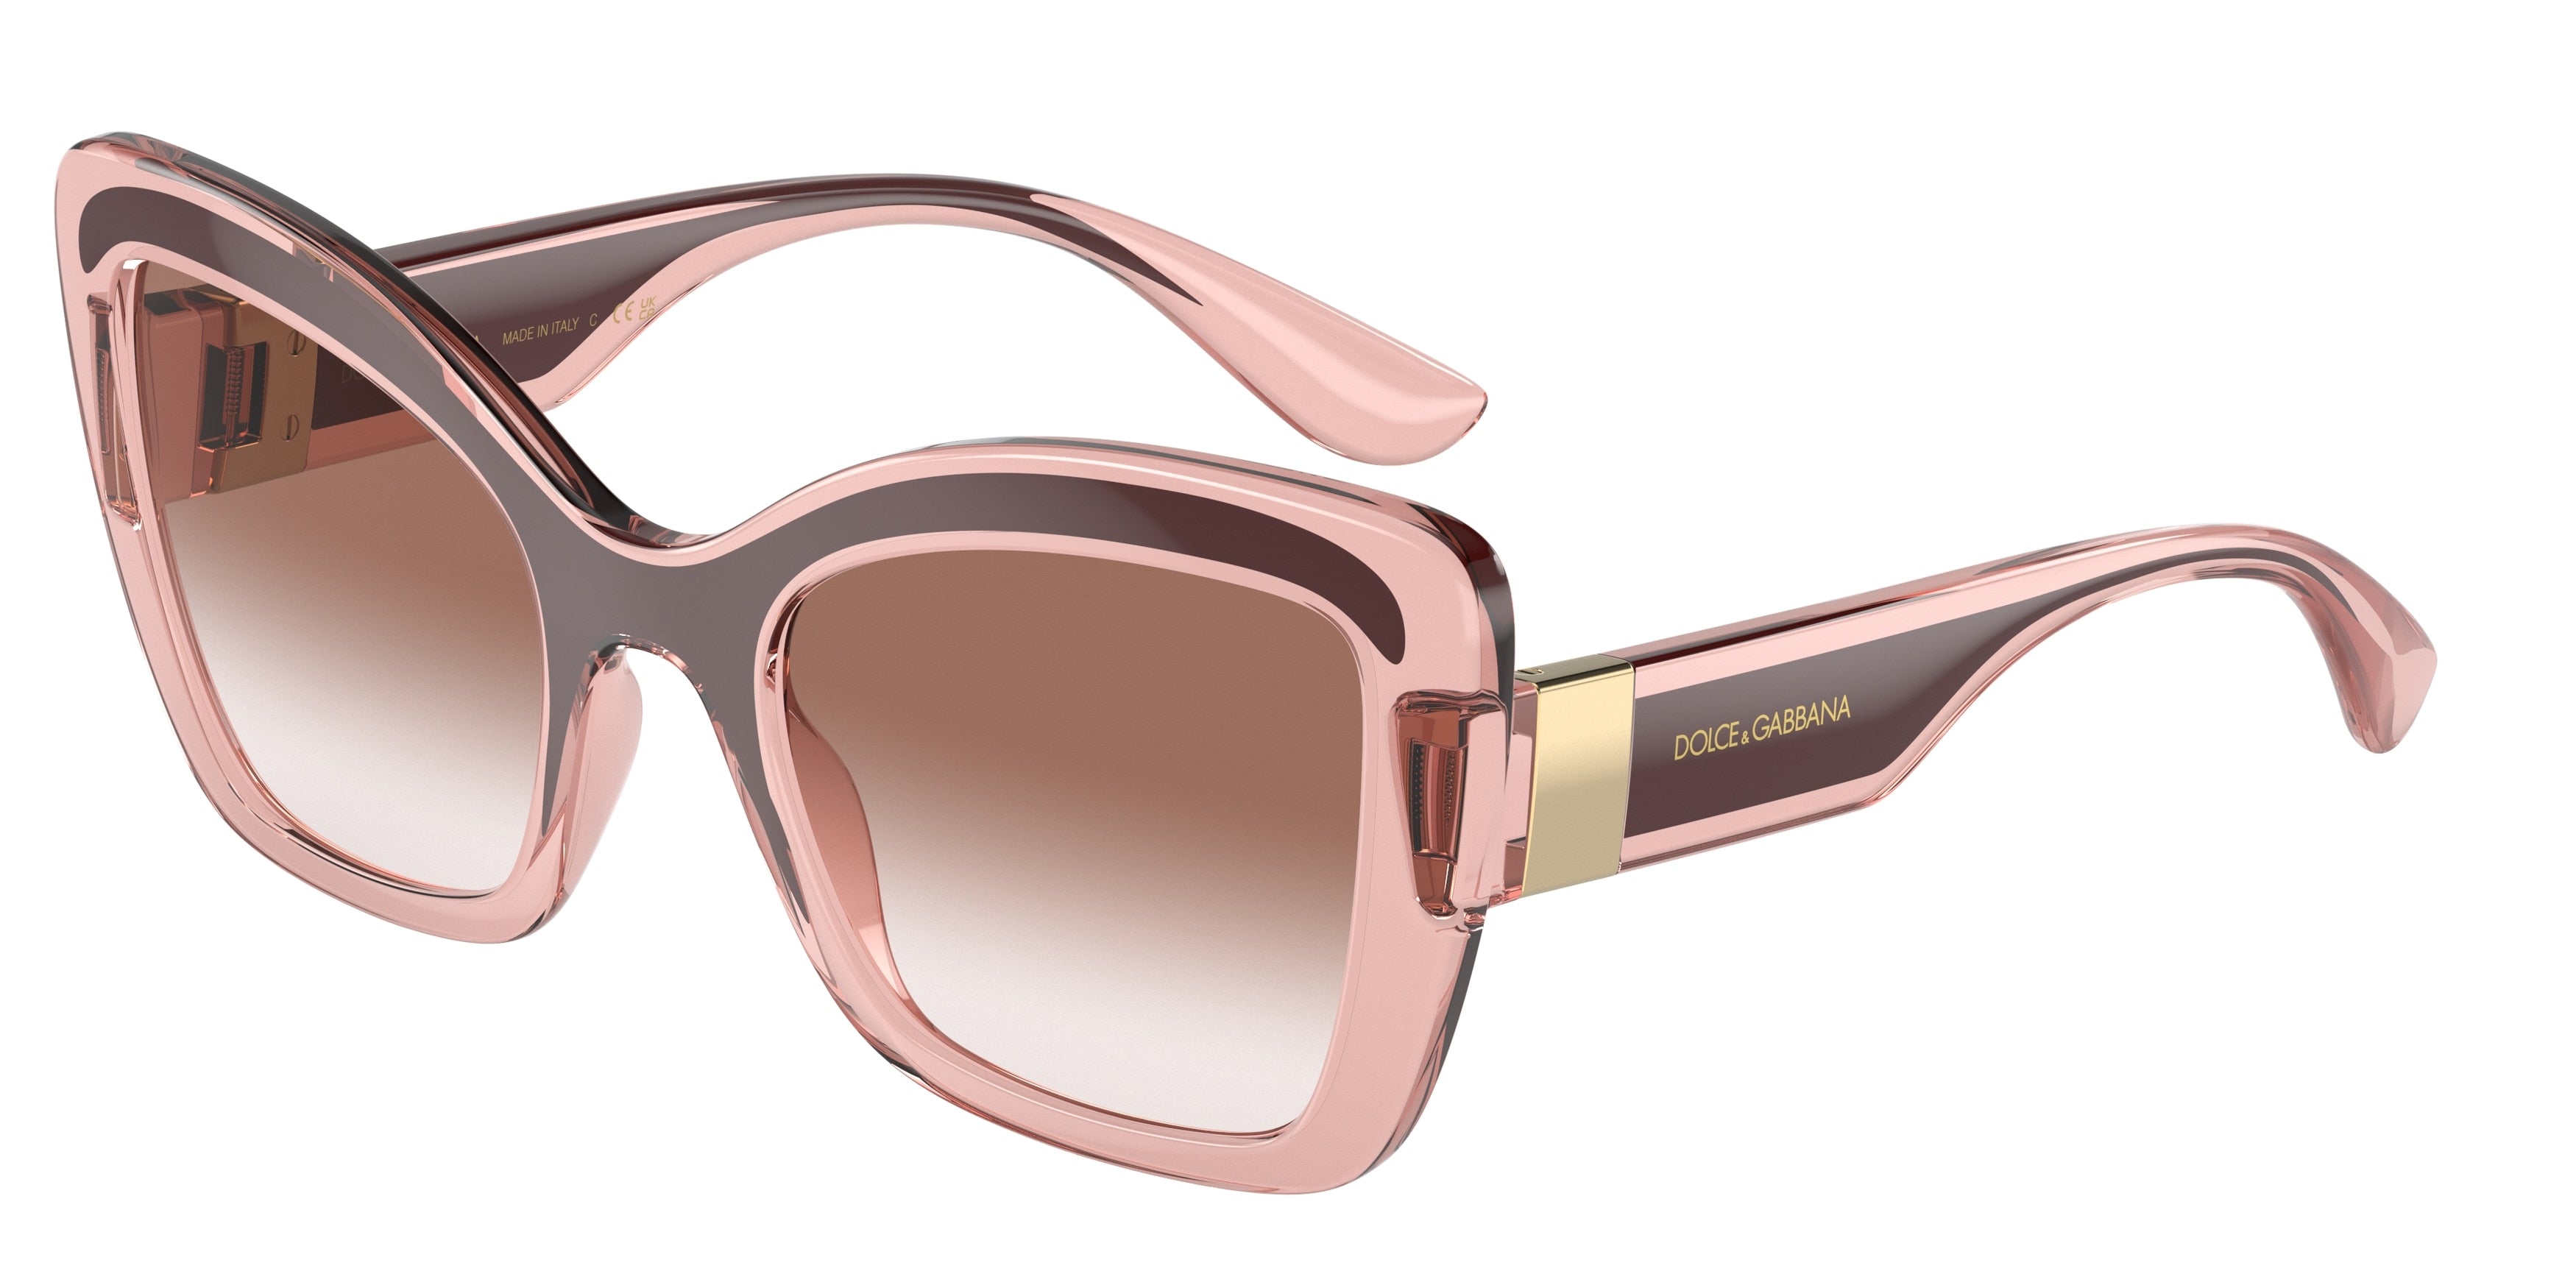 DOLCE & GABBANA DG6170 Butterfly Sunglasses  31908D-Transparent Pink/Bordeaux 52-145-22 - Color Map Pink